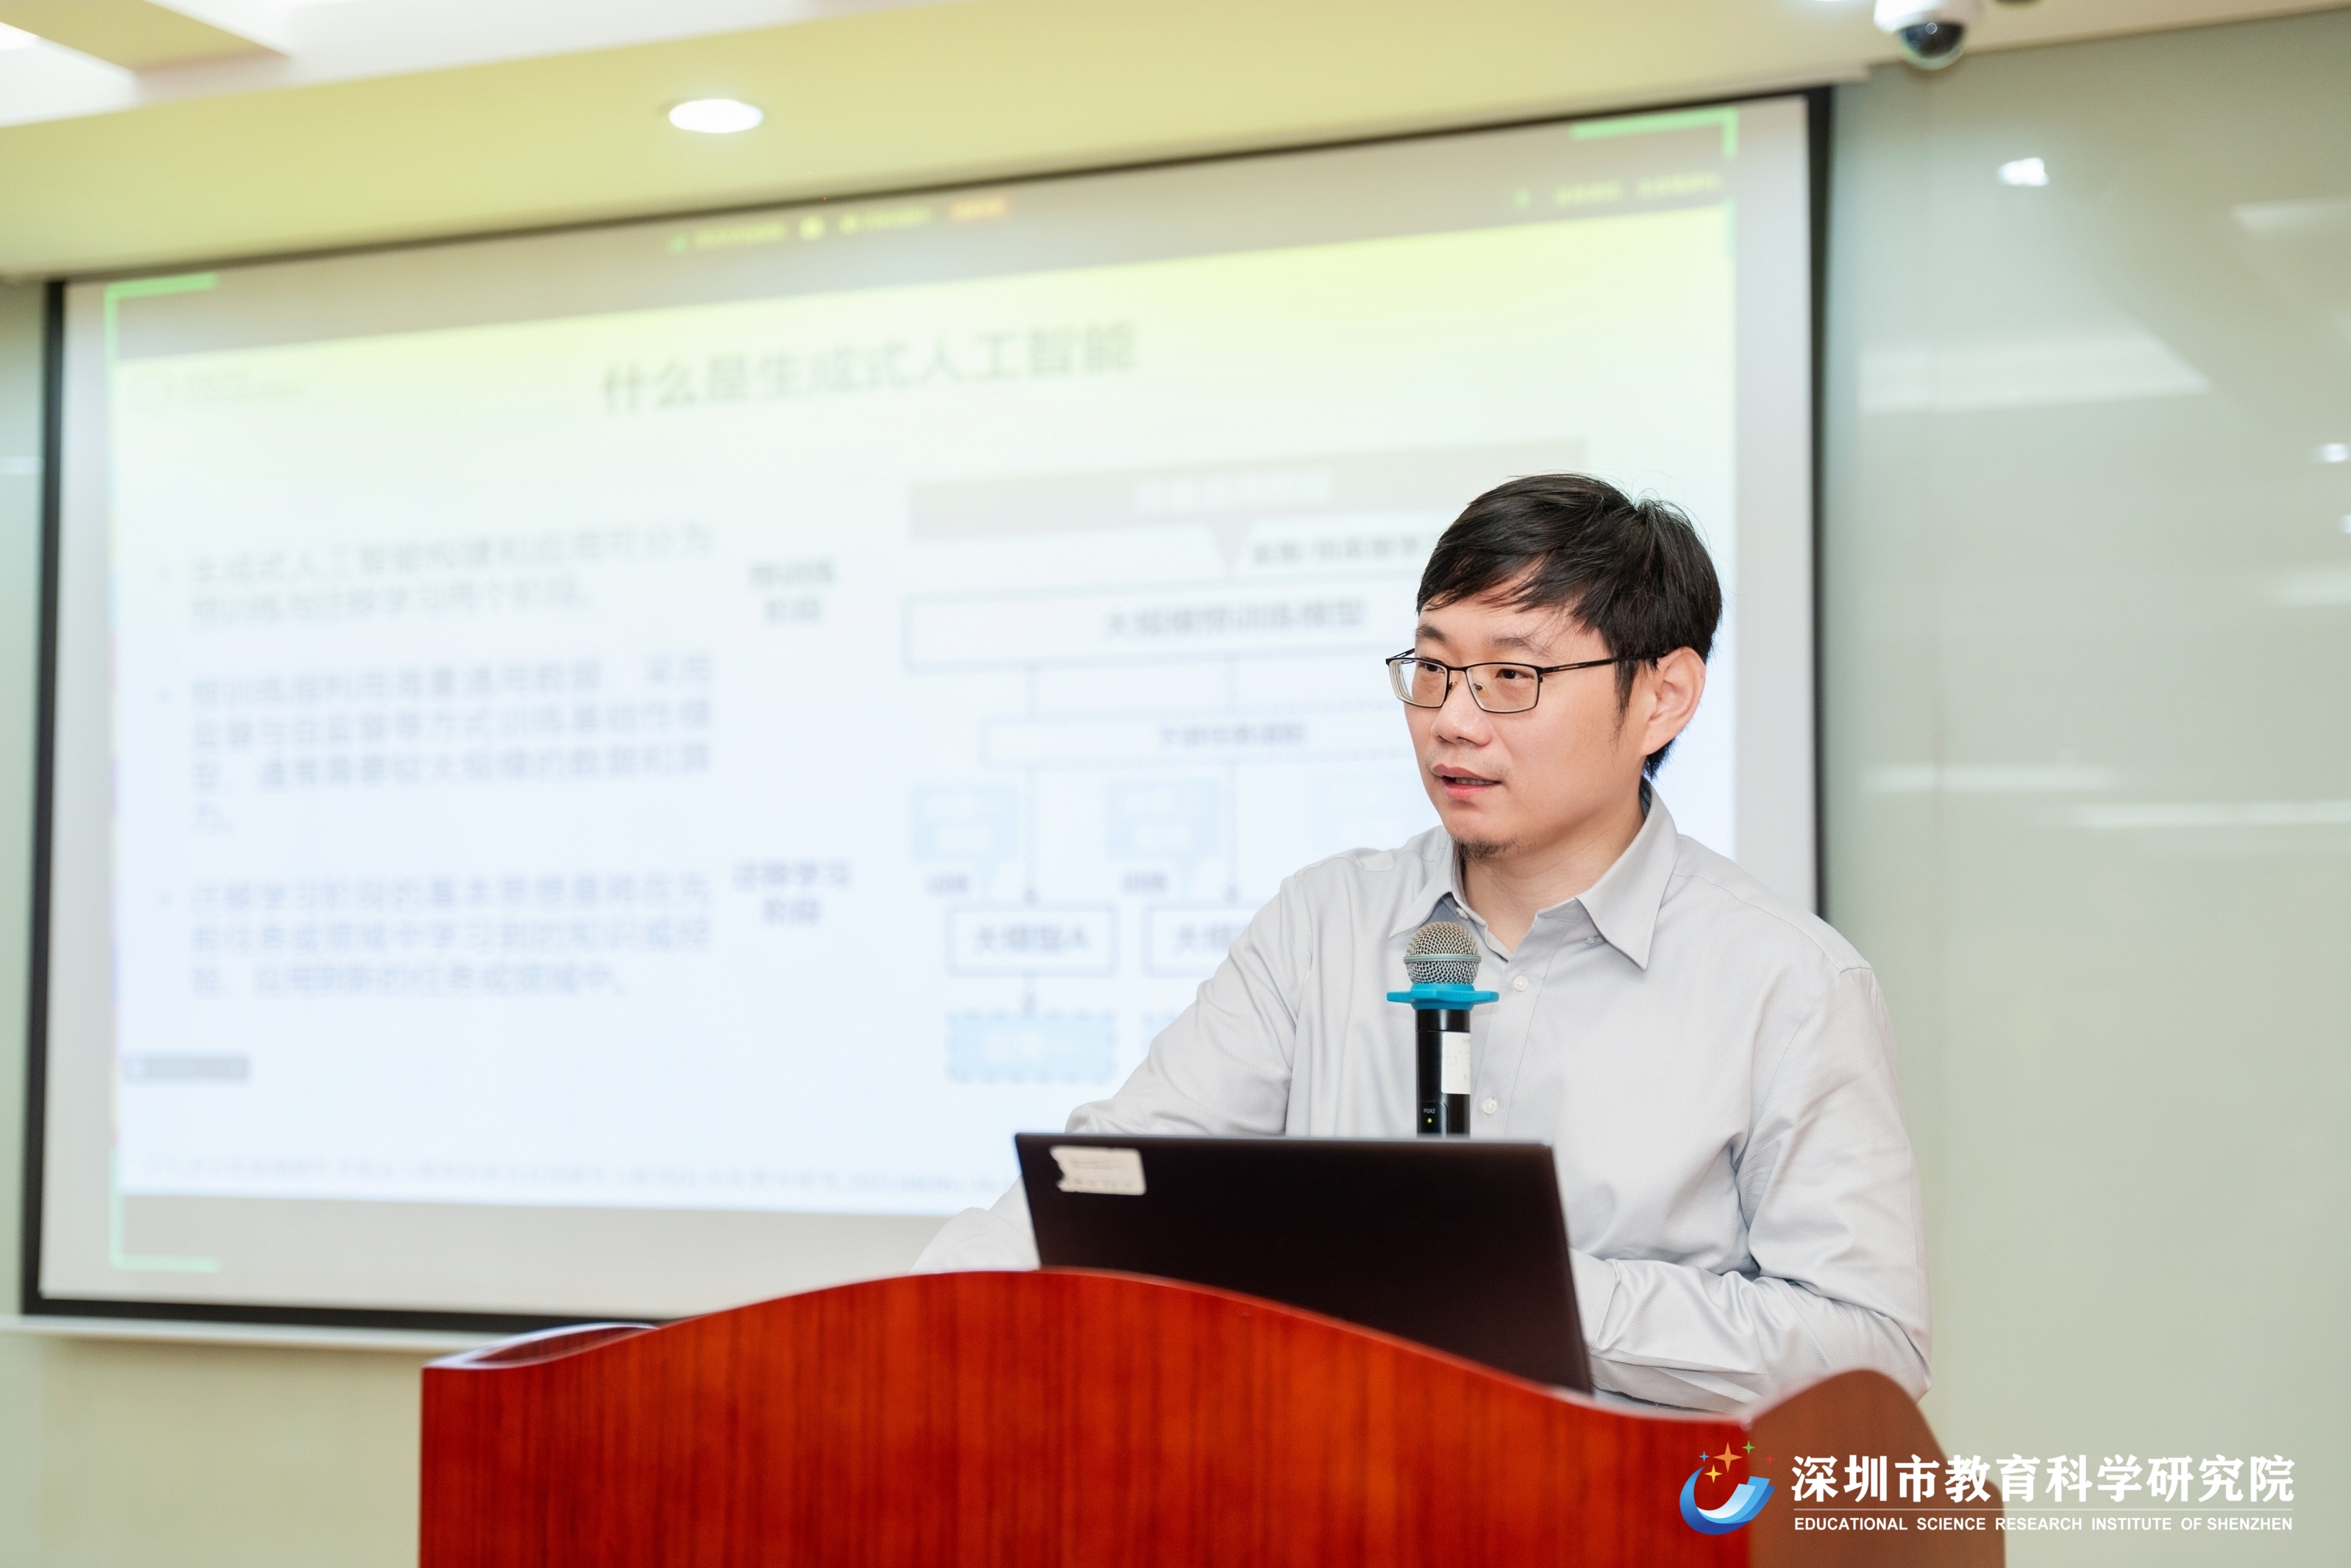 图 4 北京师范大学未来教育高精尖创新中心人工智能实验室主任卢宇作讲座.jpg